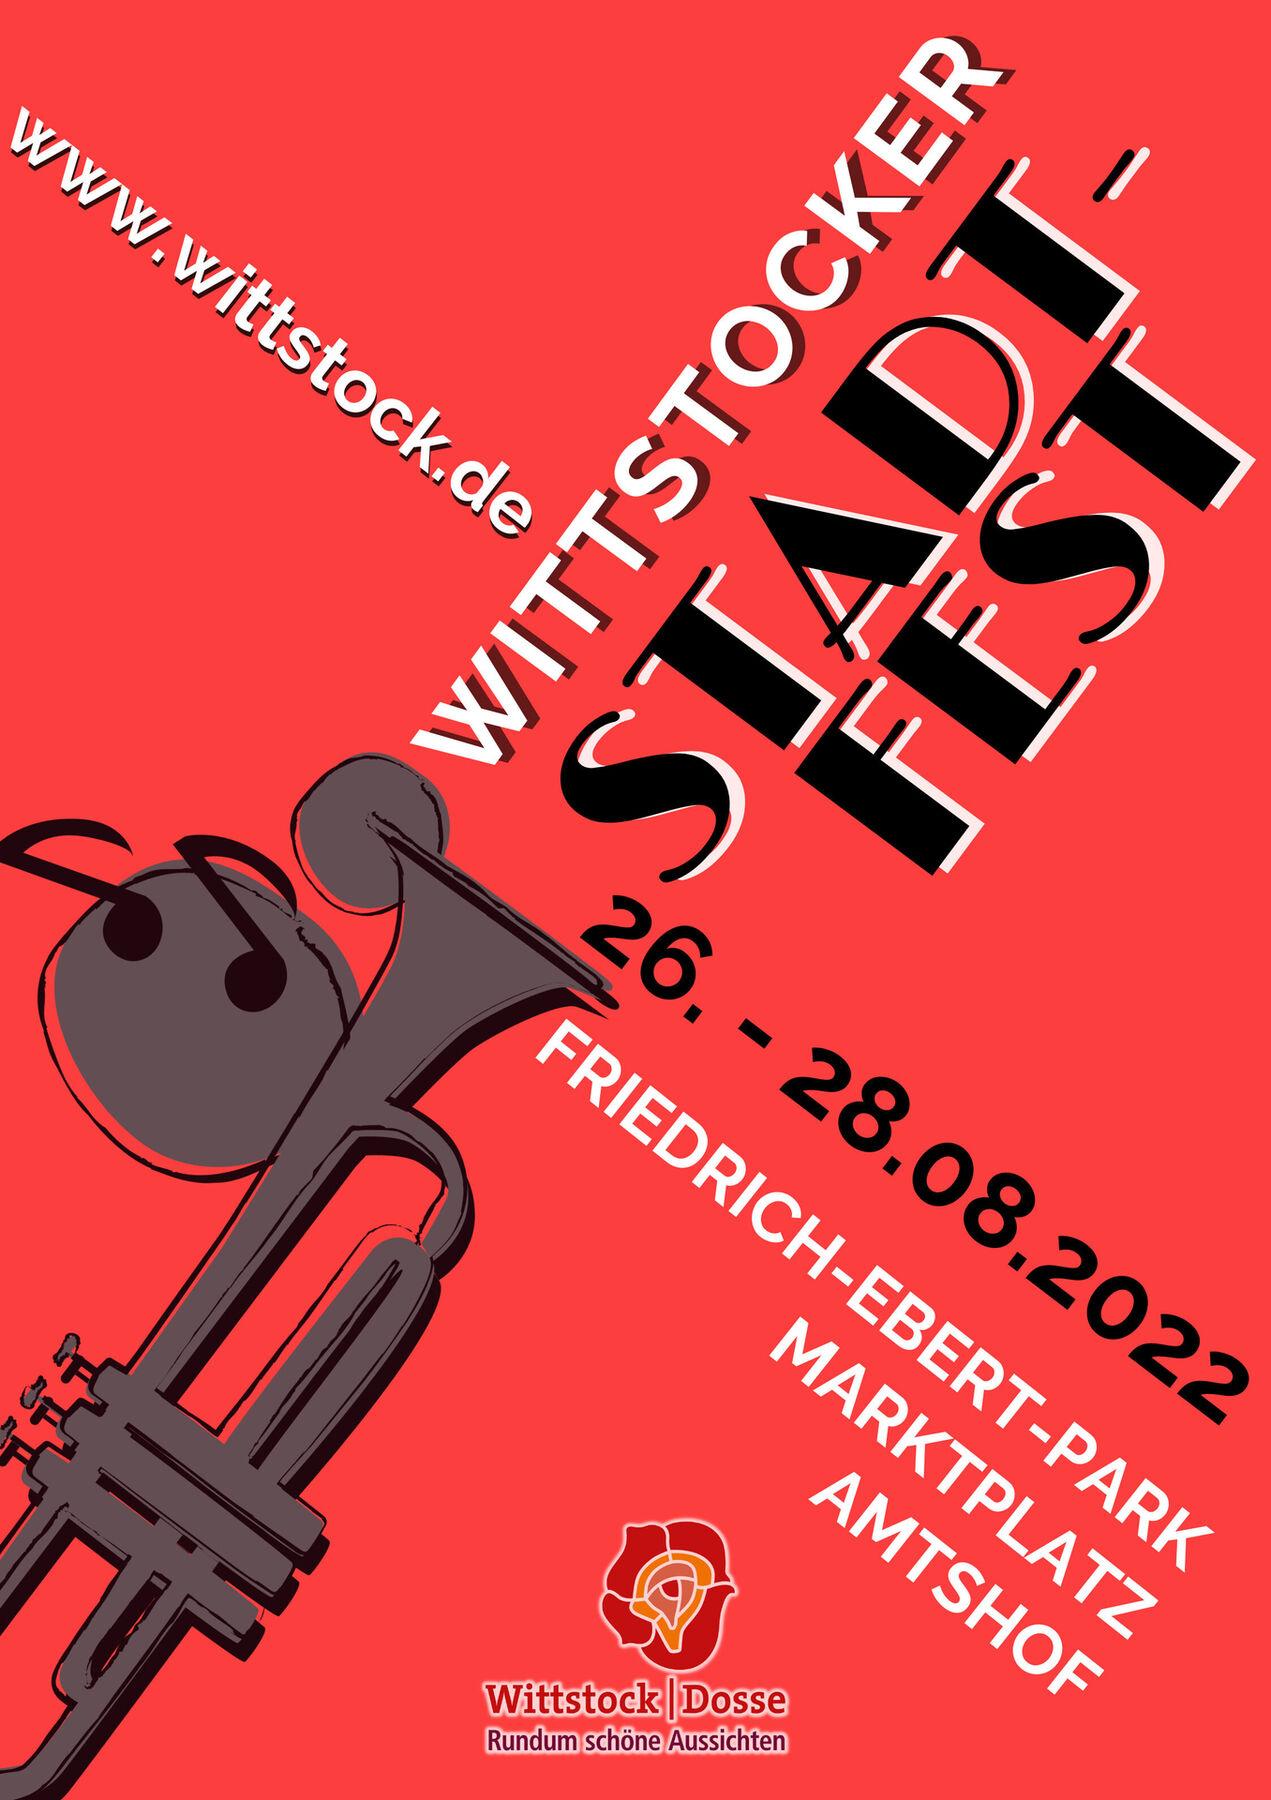 Wittstocker Stadtfest, Foto: Stadt Wittstock, Lizenz: Stadt Wittstock